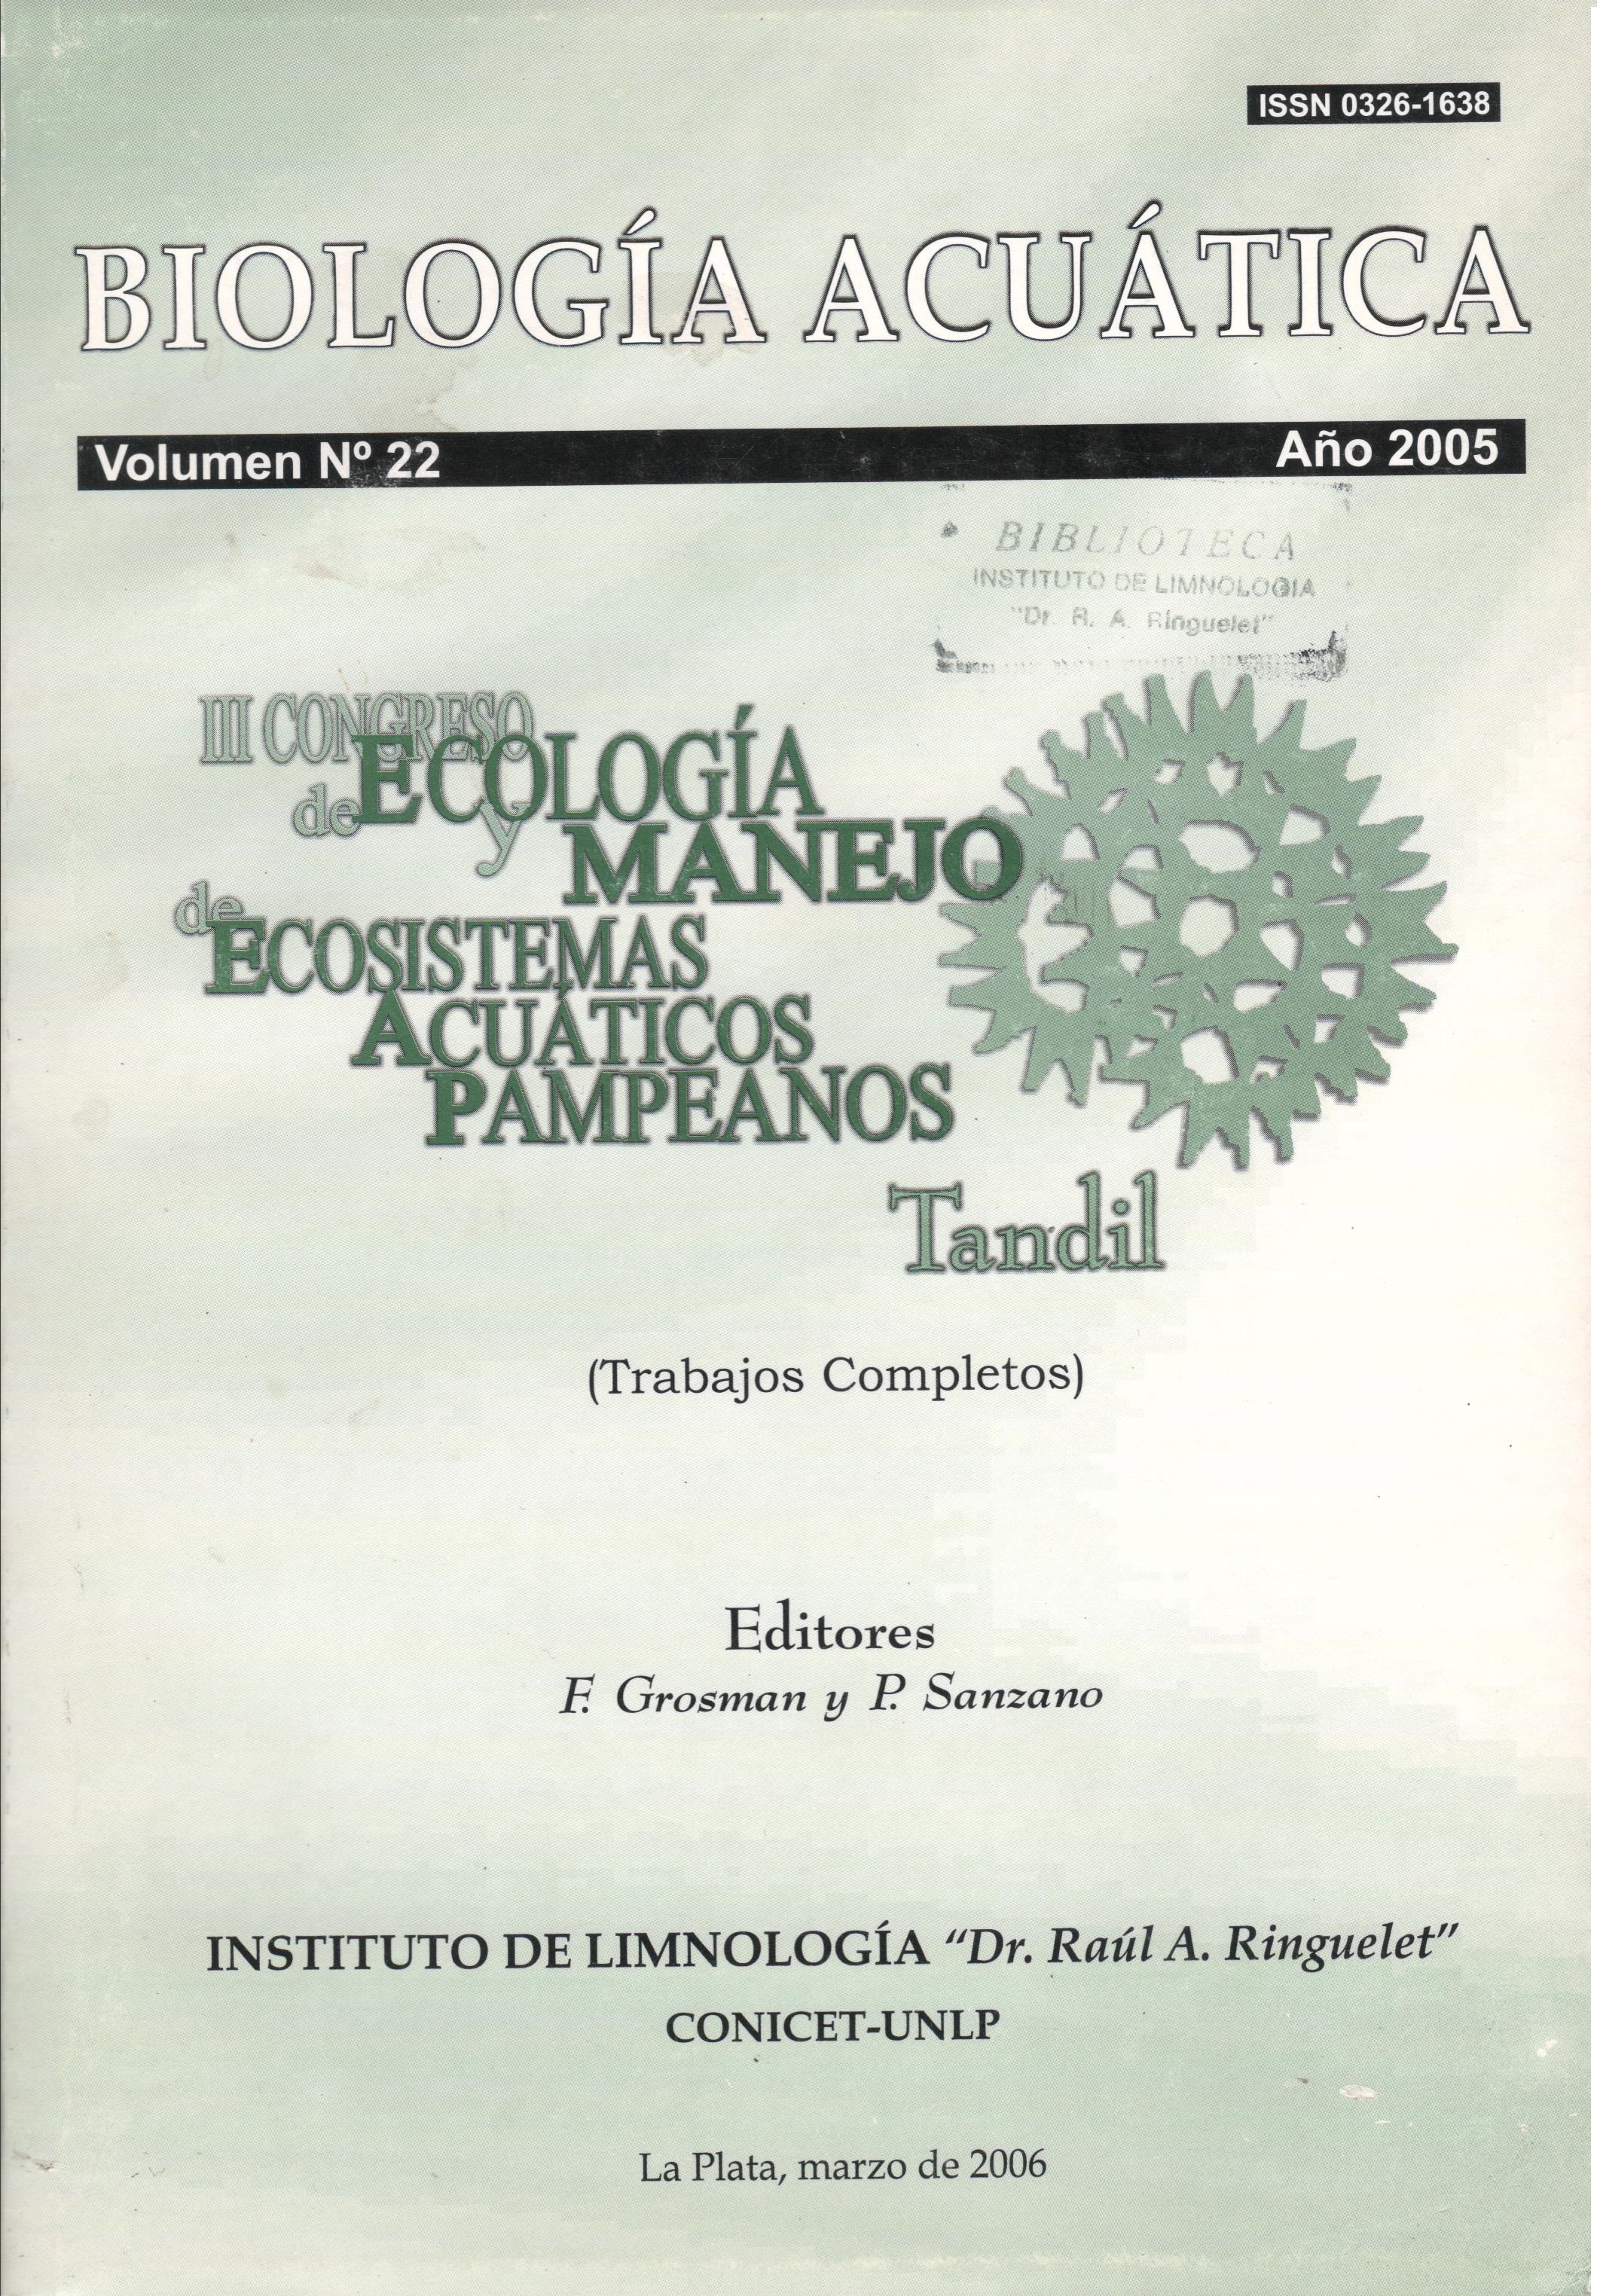 					Ver Núm. 22 (2005): Trabajos completos del III Congreso de Ecología y Manejo de Ecosistemas Acuáticos Pampeanos (EMEAP)
				